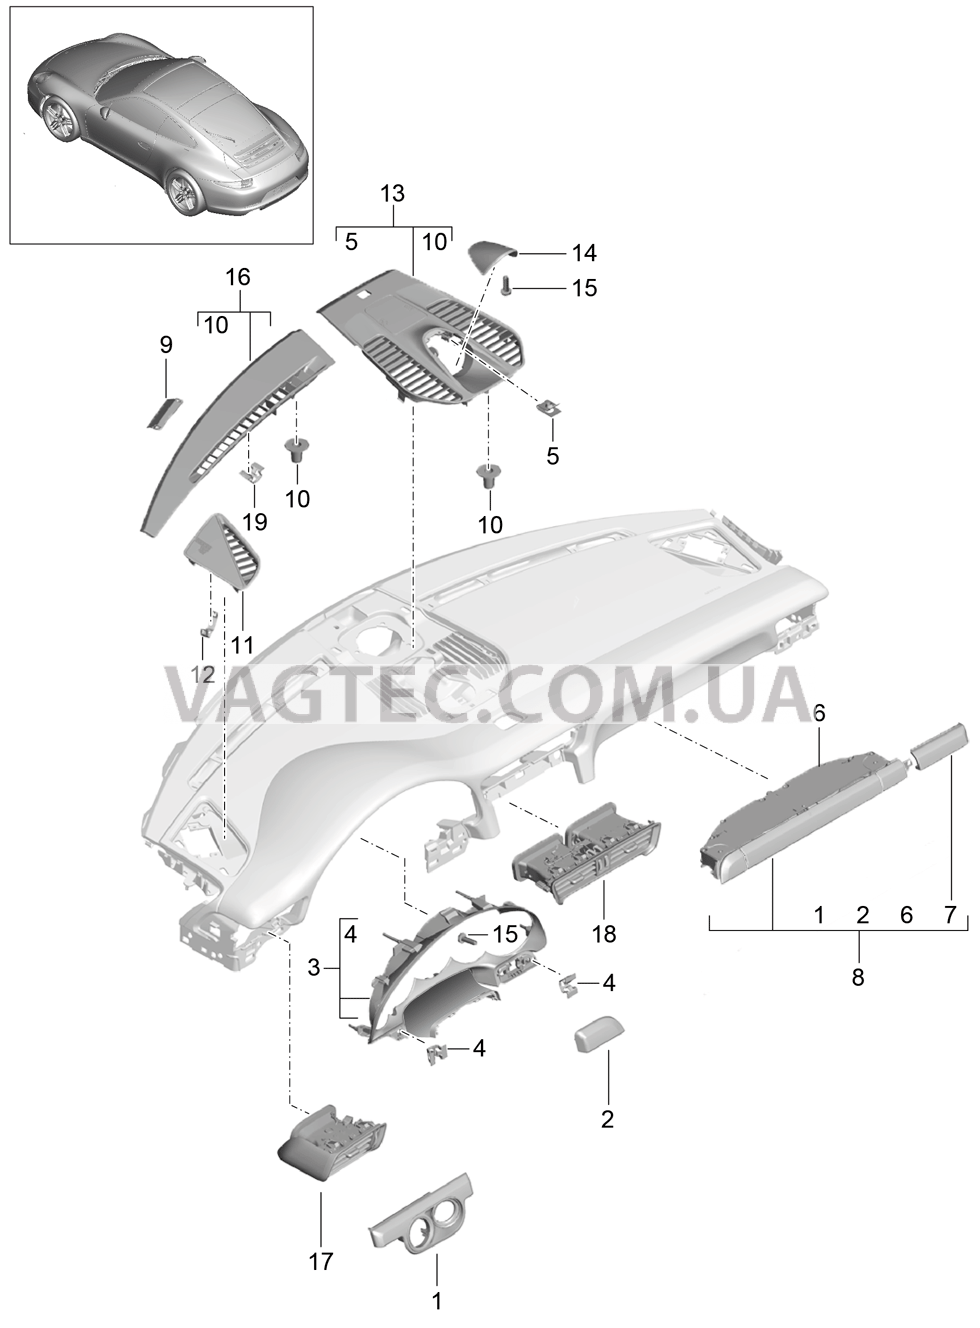 809-005 Детали, Облицовка передней панели, Верхняя часть для PORSCHE 911.Carrera 2012-2016USA